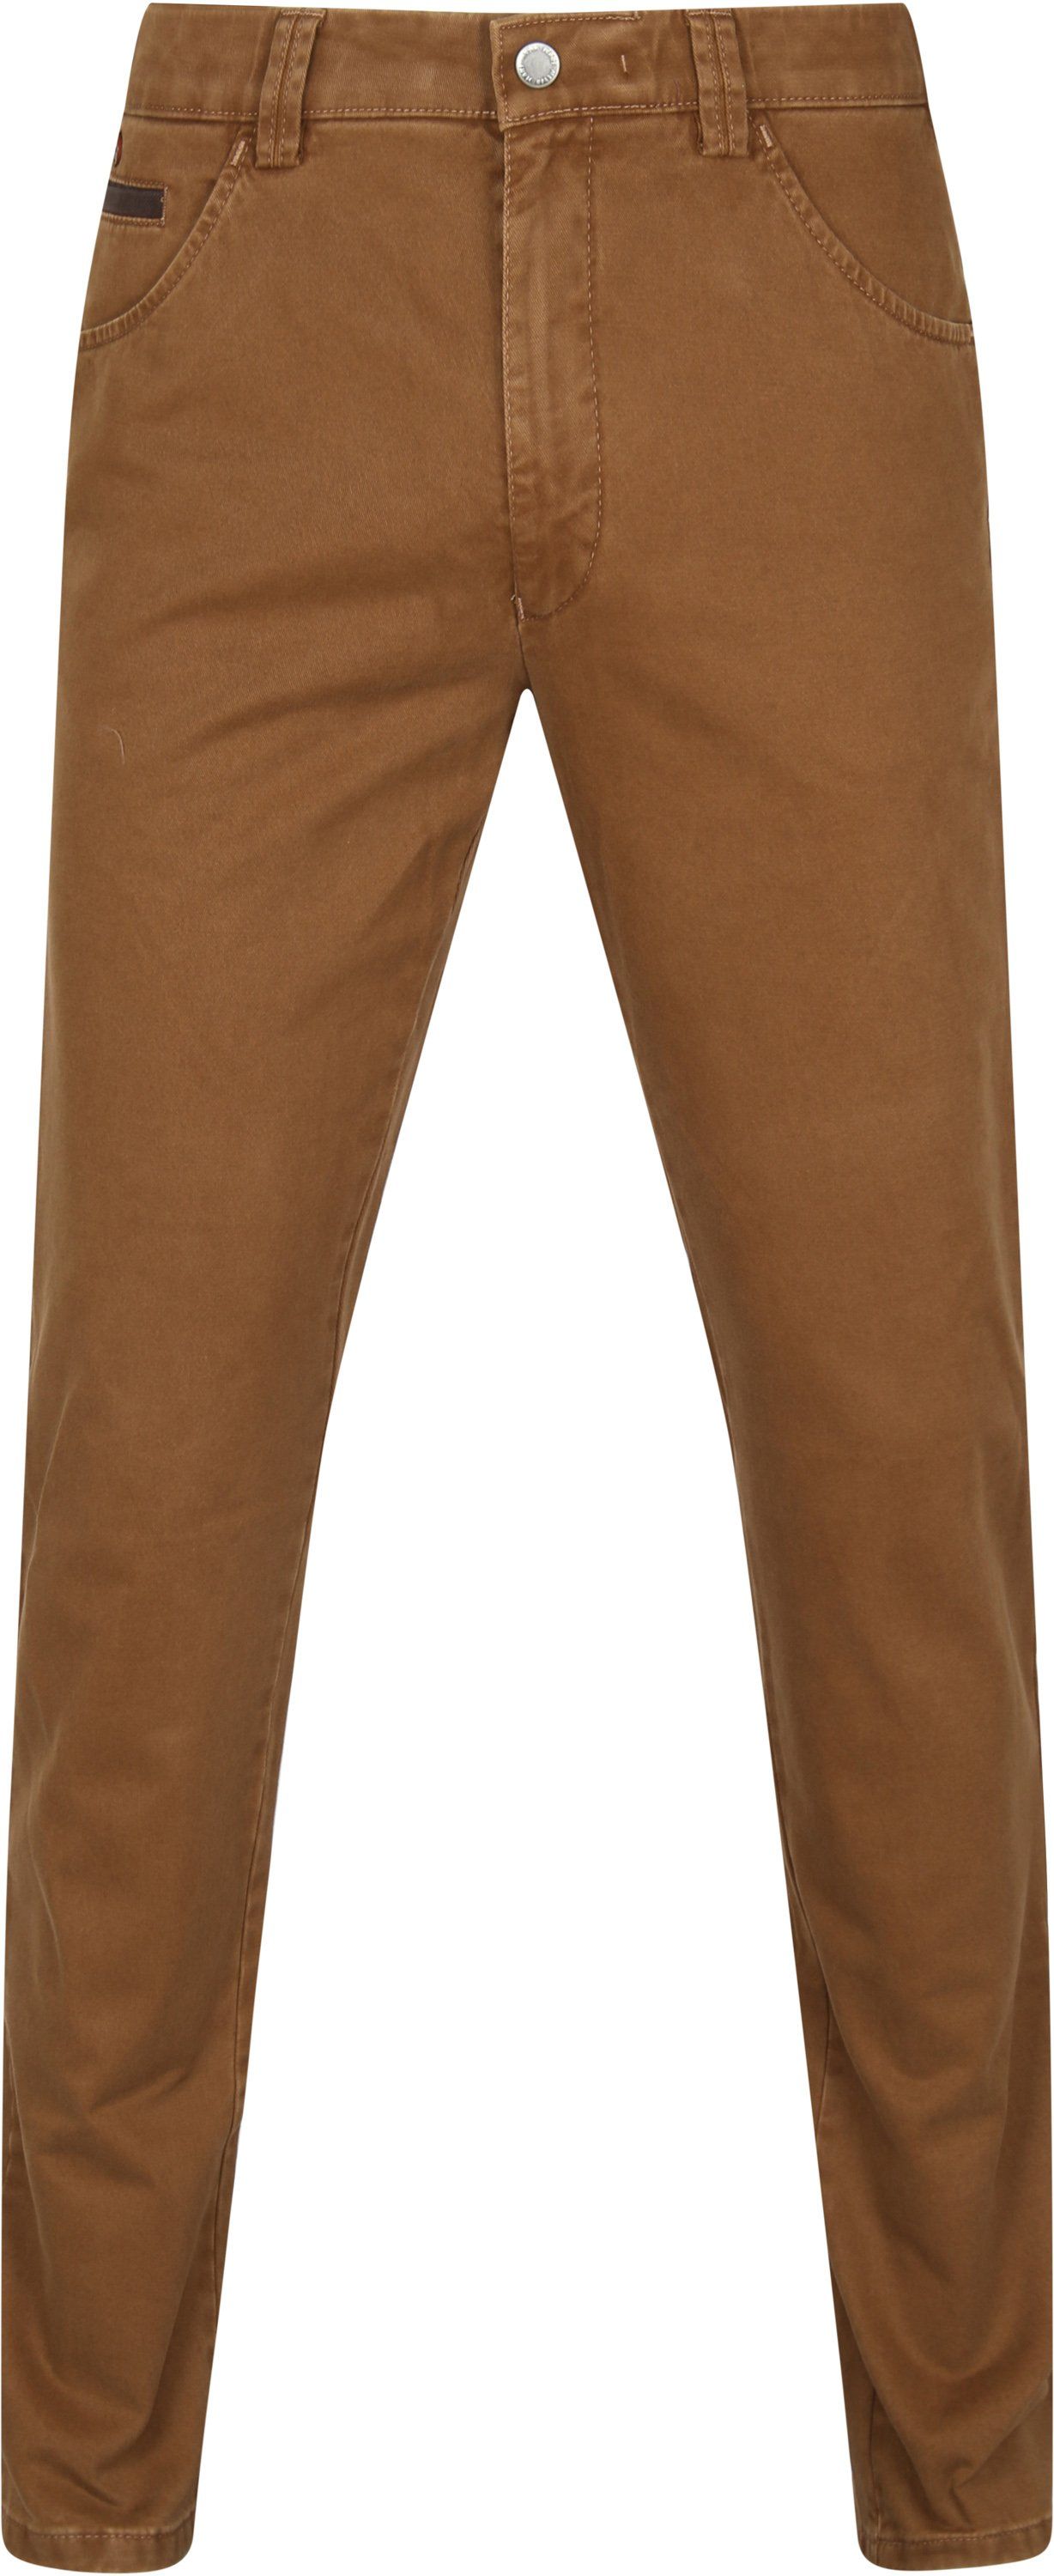 Meyer Dublin Pants Brown size W 36